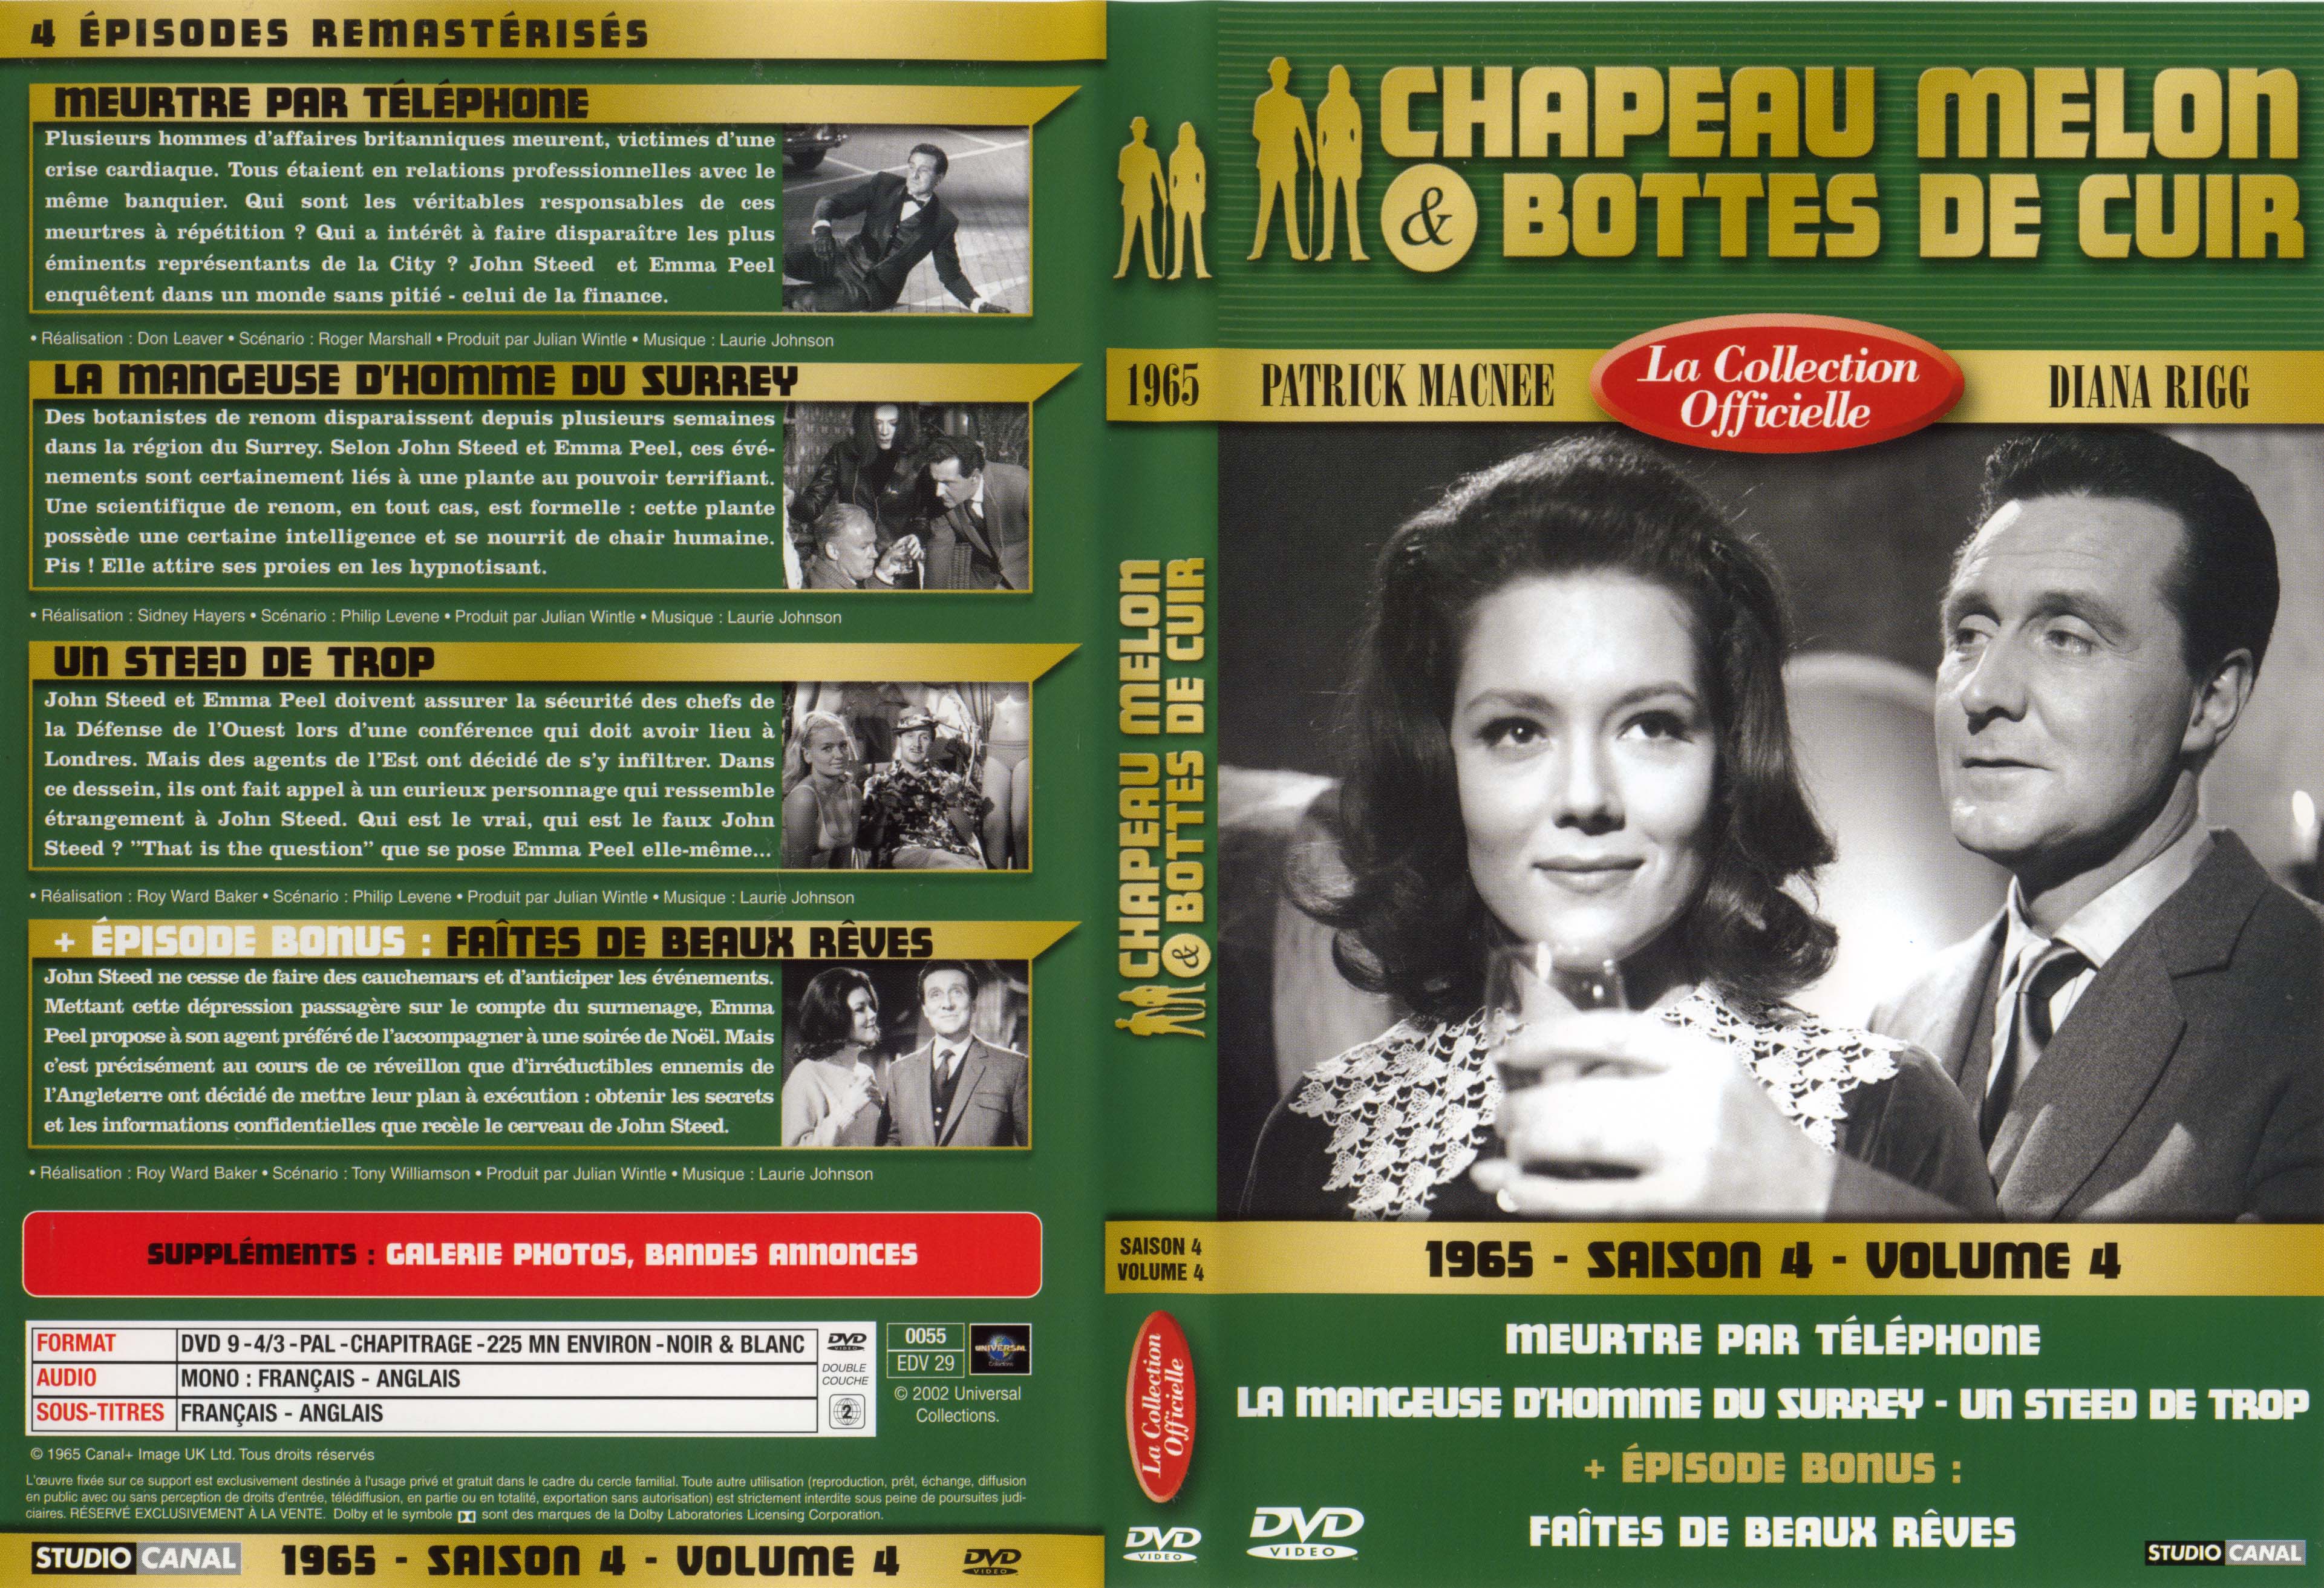 Jaquette DVD Chapeau melon et bottes de cuir 1965 saison 4 vol 4